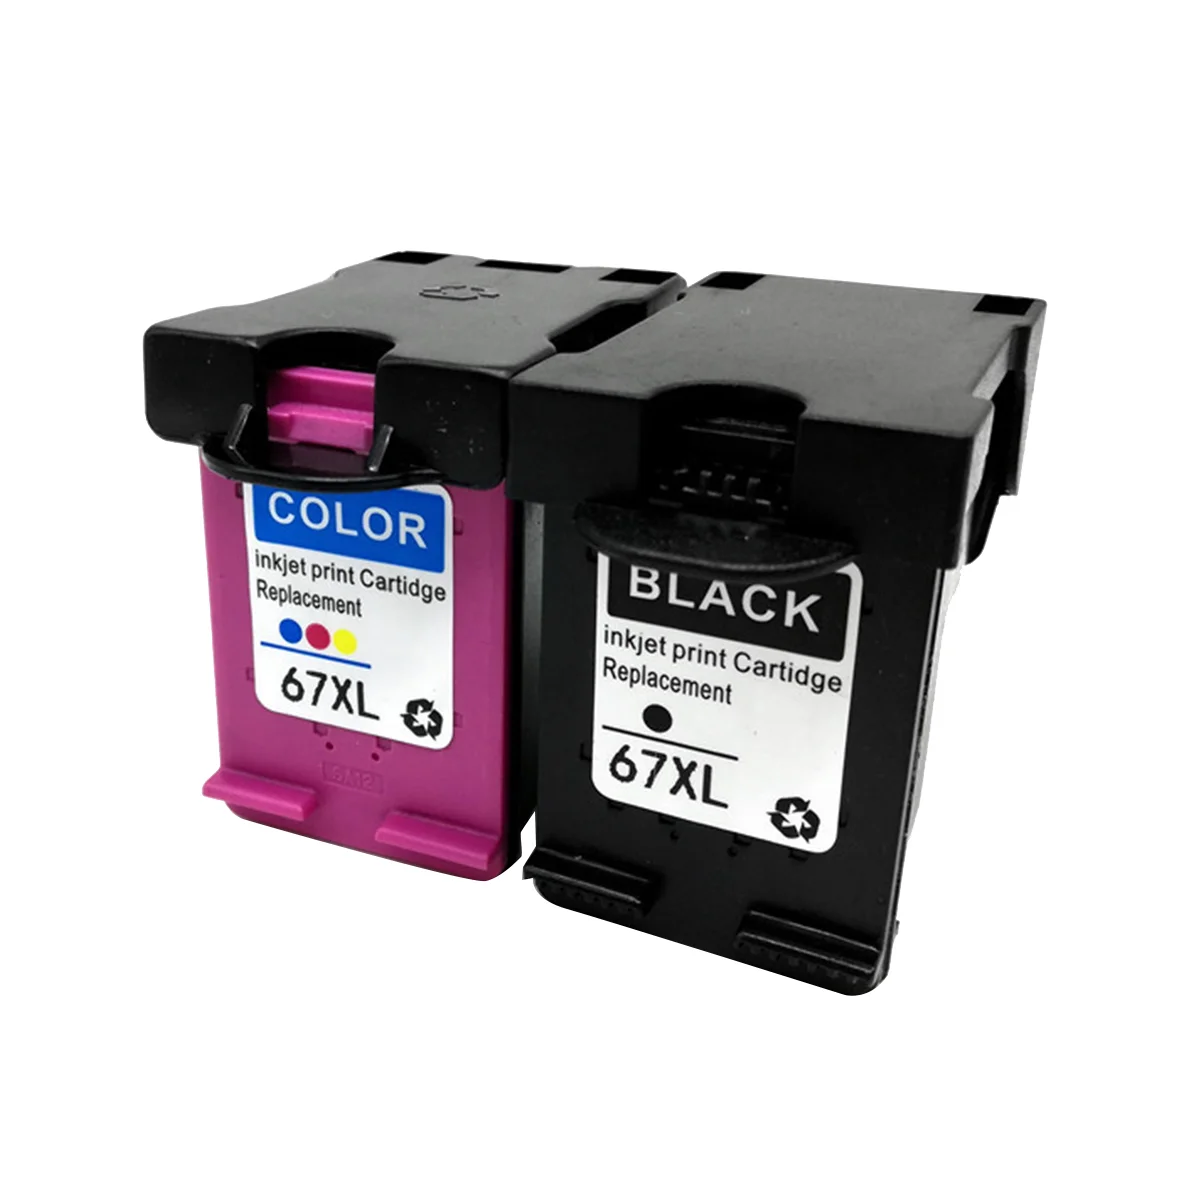 

67XL IInk Box совместимый с HP67 XL замена чернил для принтера DeskJet 1255 2732 4140 4155